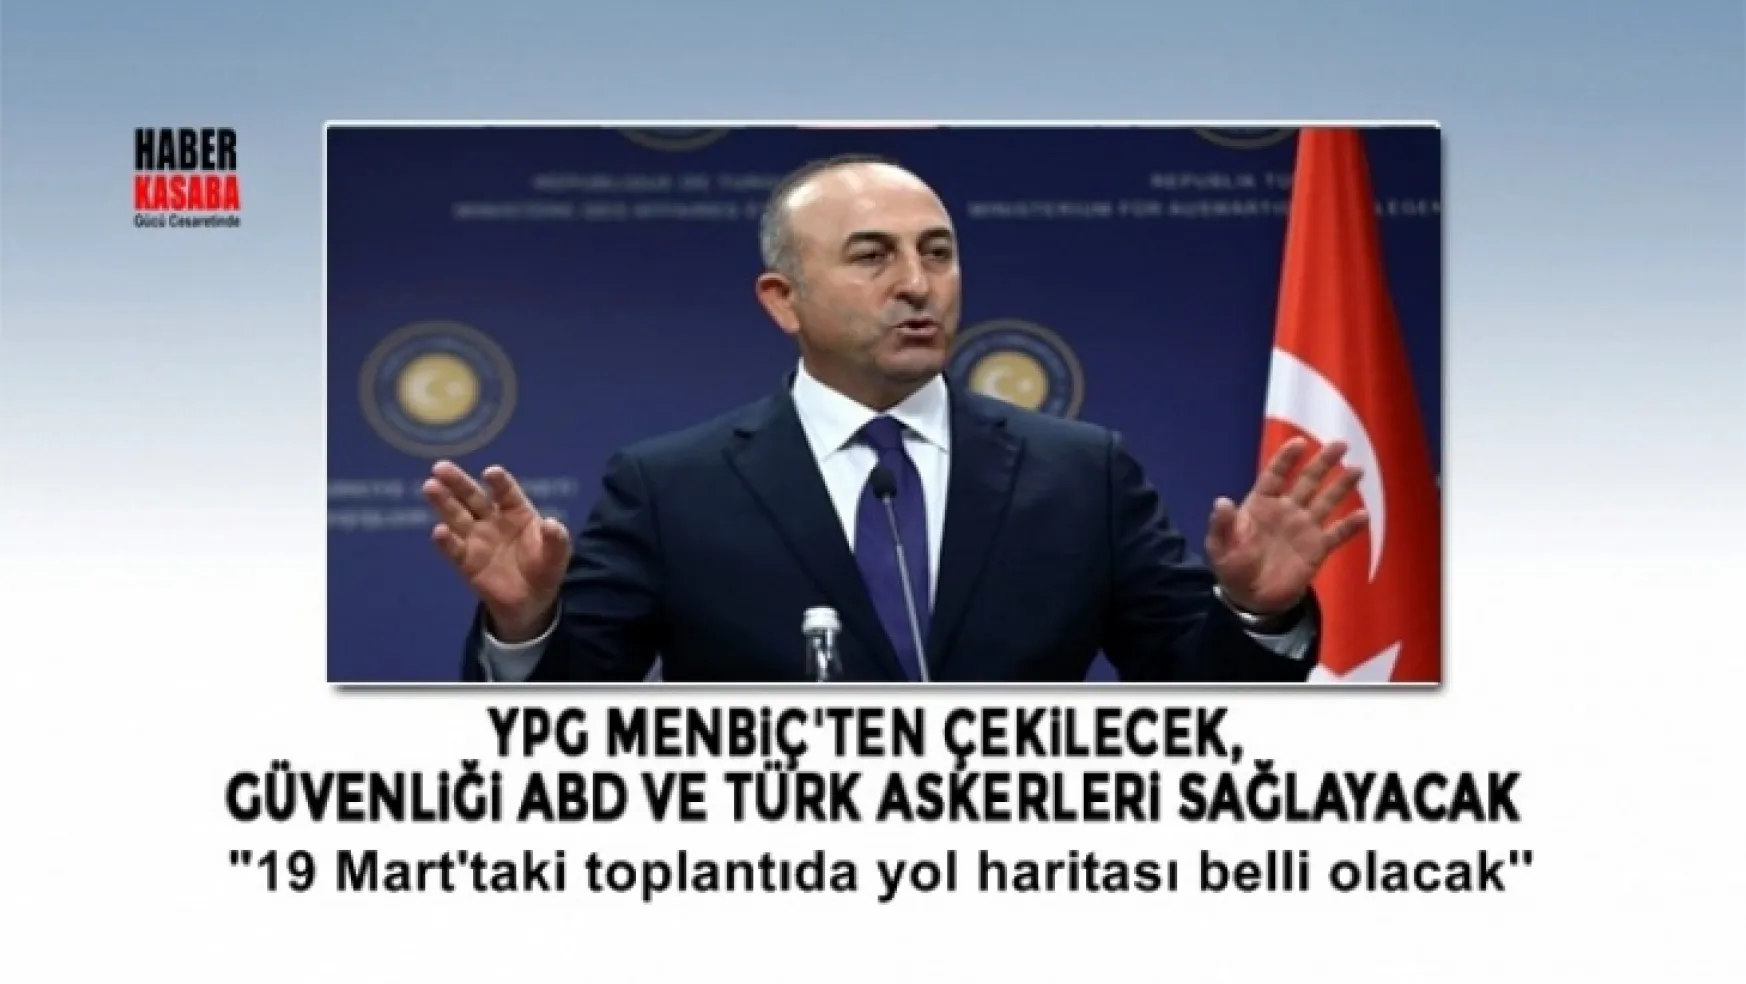 Menbiç'in güvenliğini ABD ve Türk askerleri sağlayacak!